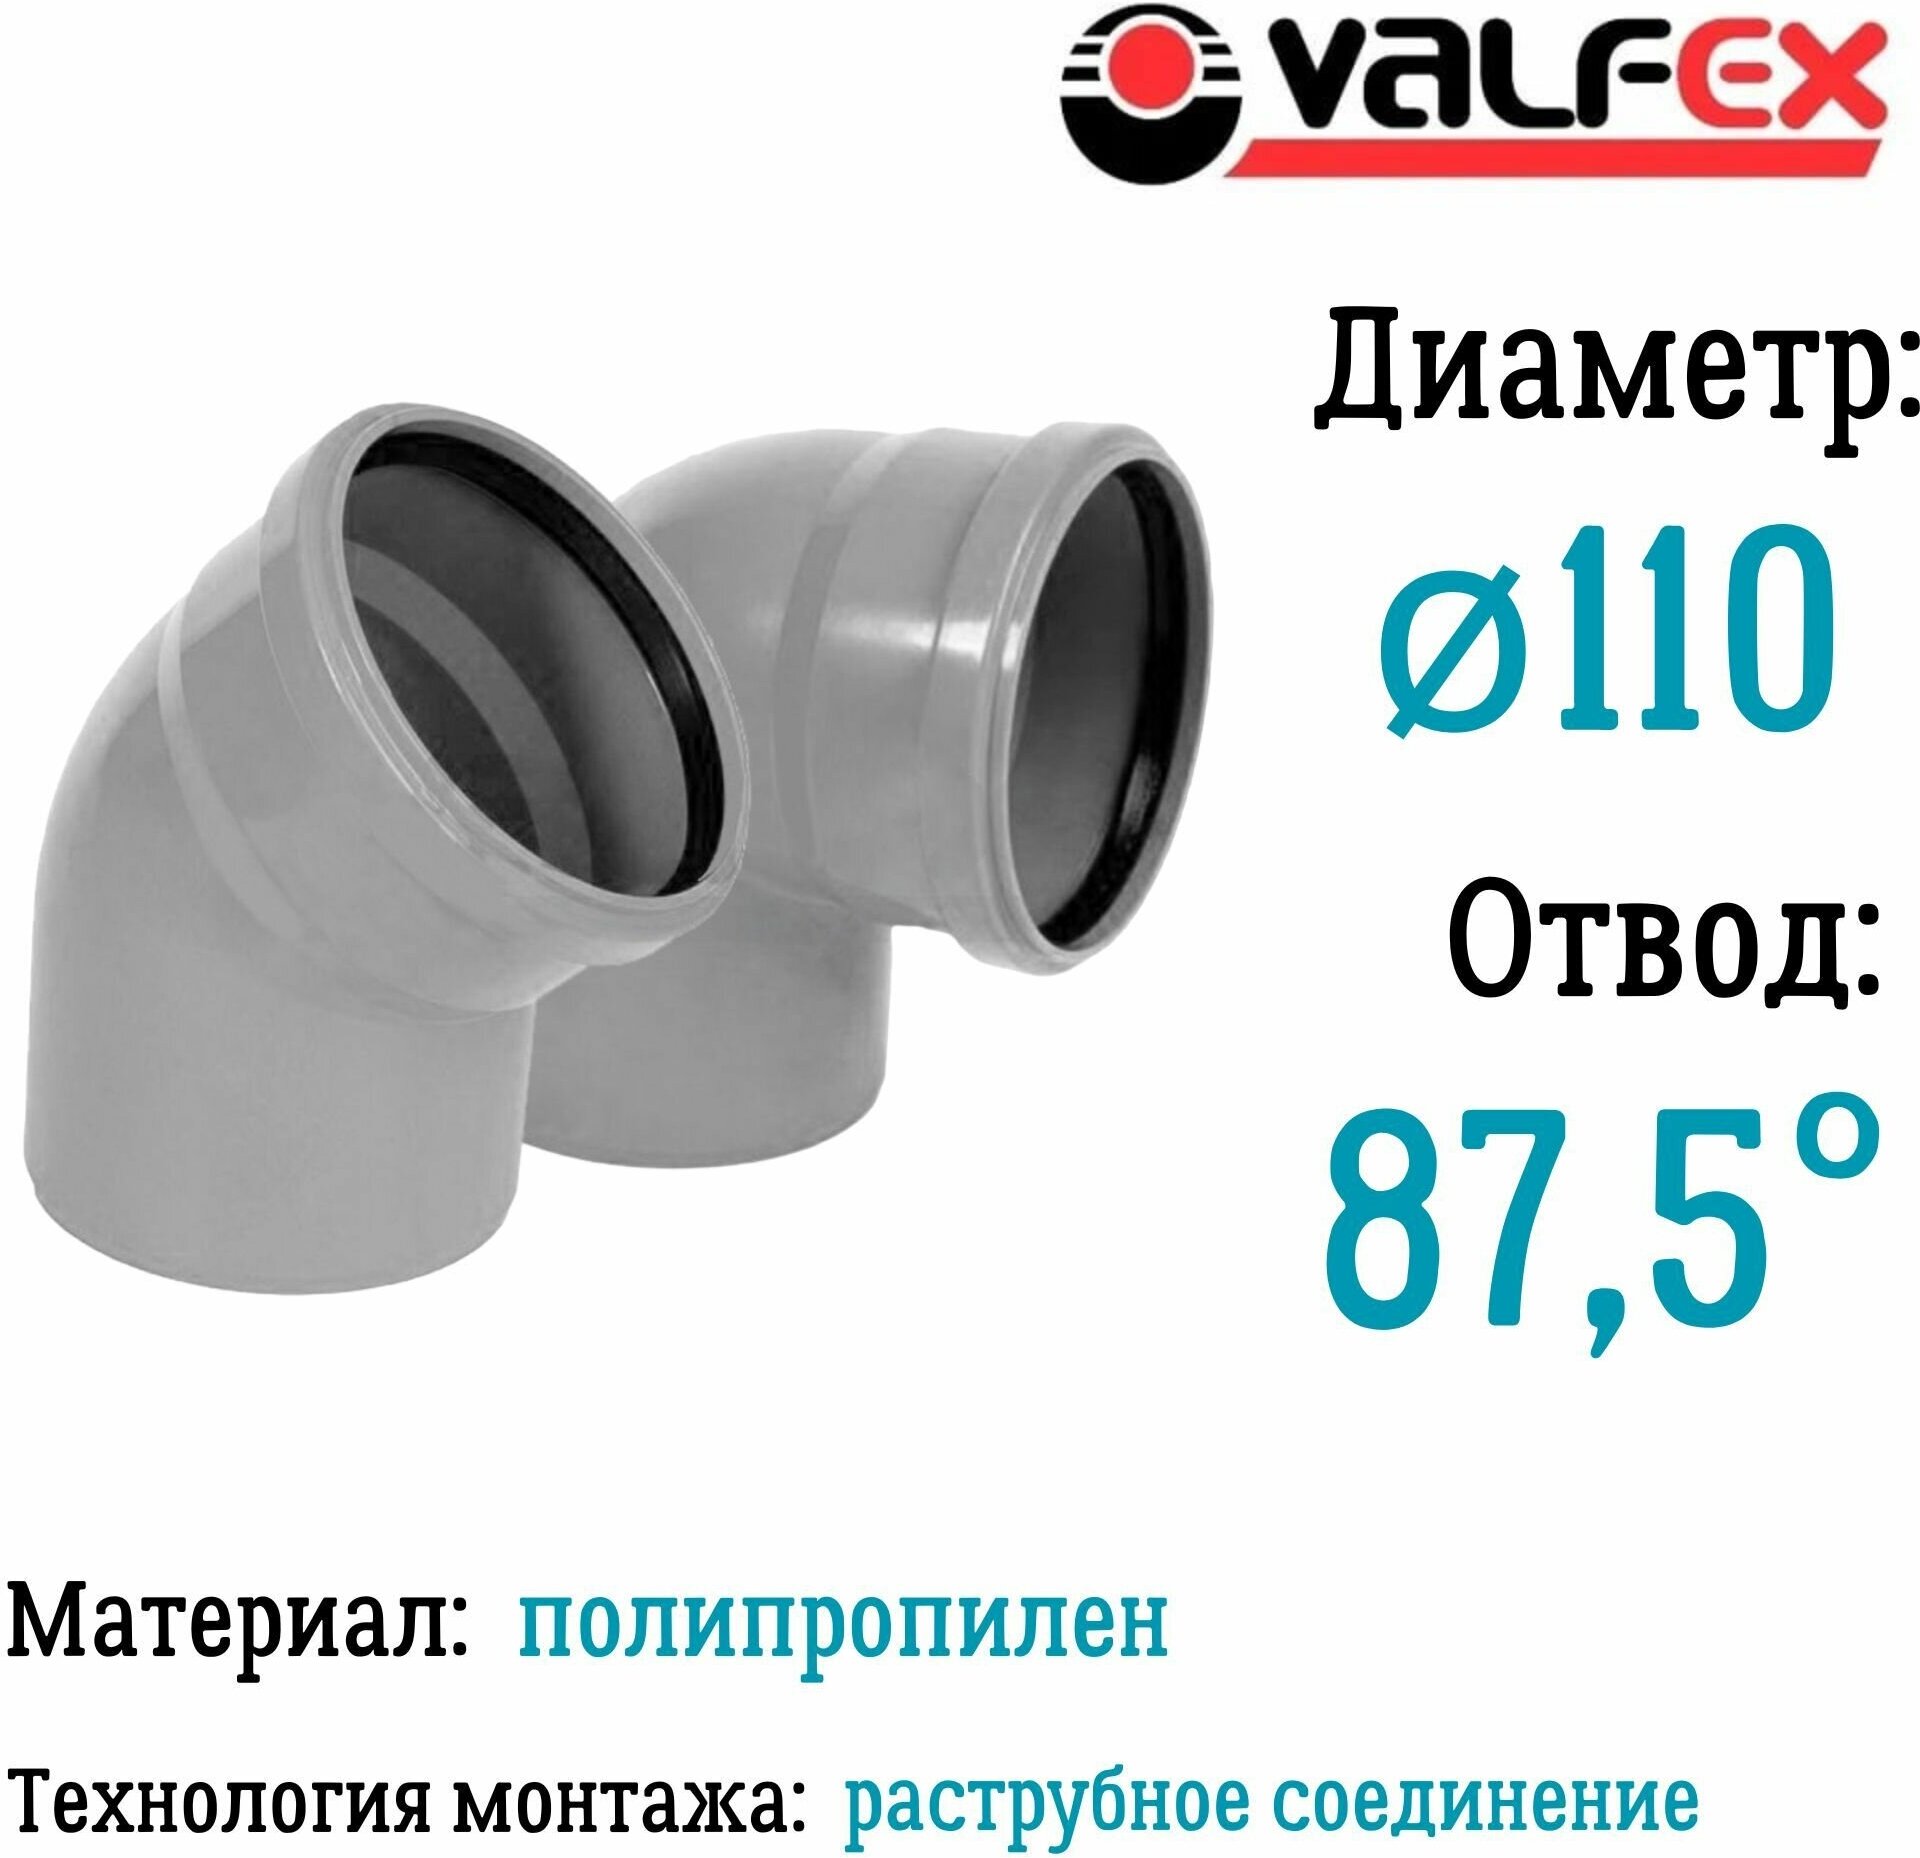 Отвод полипропиленовый D110 мм 875 градусов для внутренней канализации Valfex